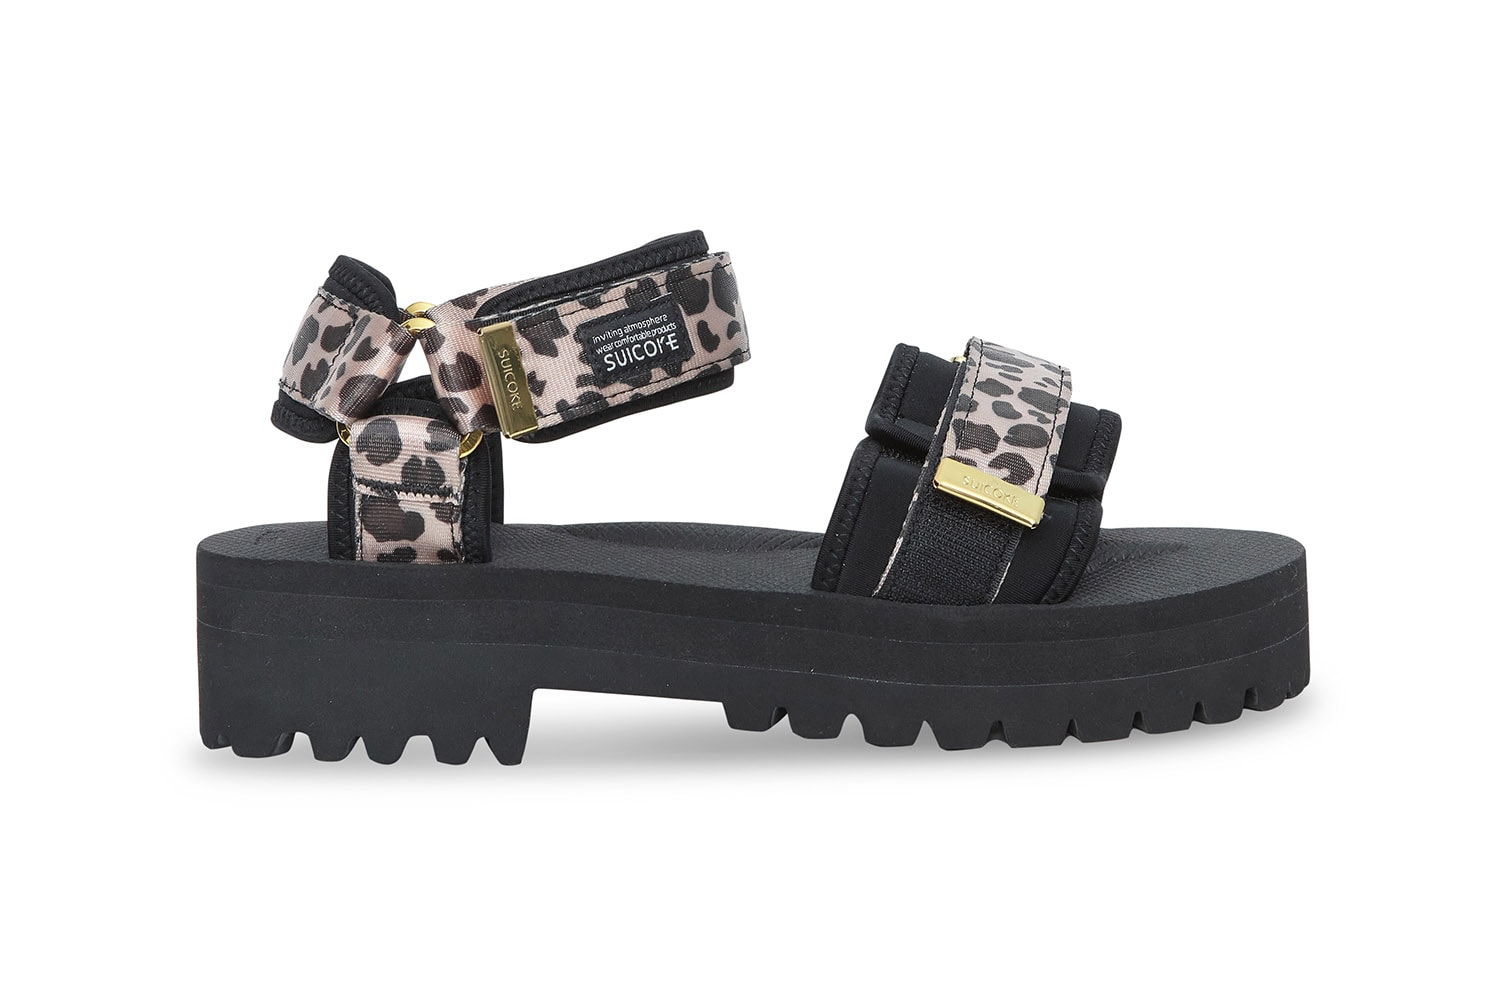 SUICOKE Patterned Summer Sandal Drop June Zebra Denim Neon Leopard